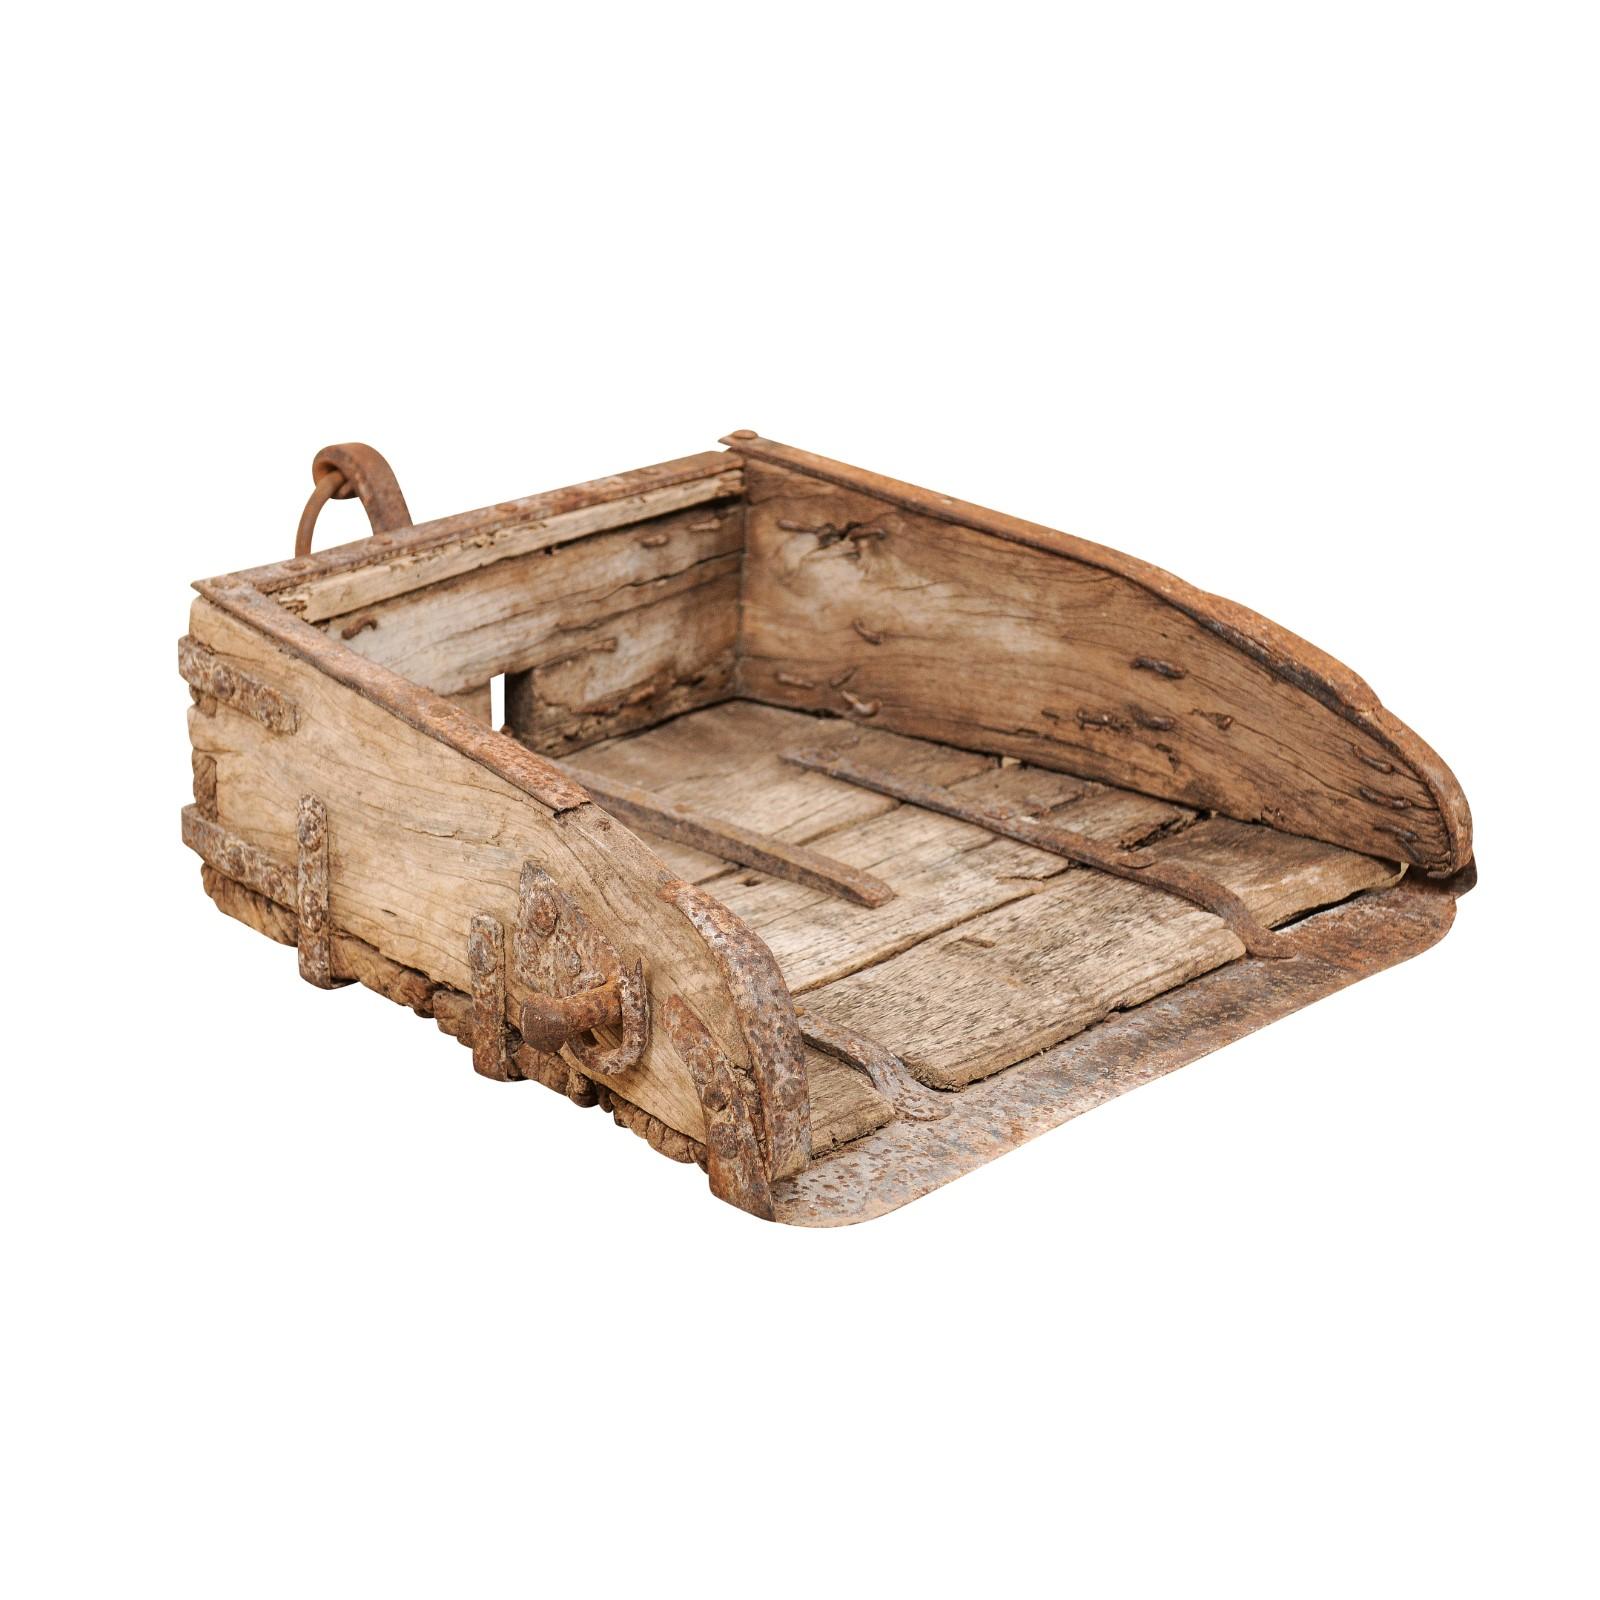 Spanischer Schaufel oder Plow aus Holz und Eisen mit rustikalem Bauernhof-Look aus dem 19. Jahrhundert